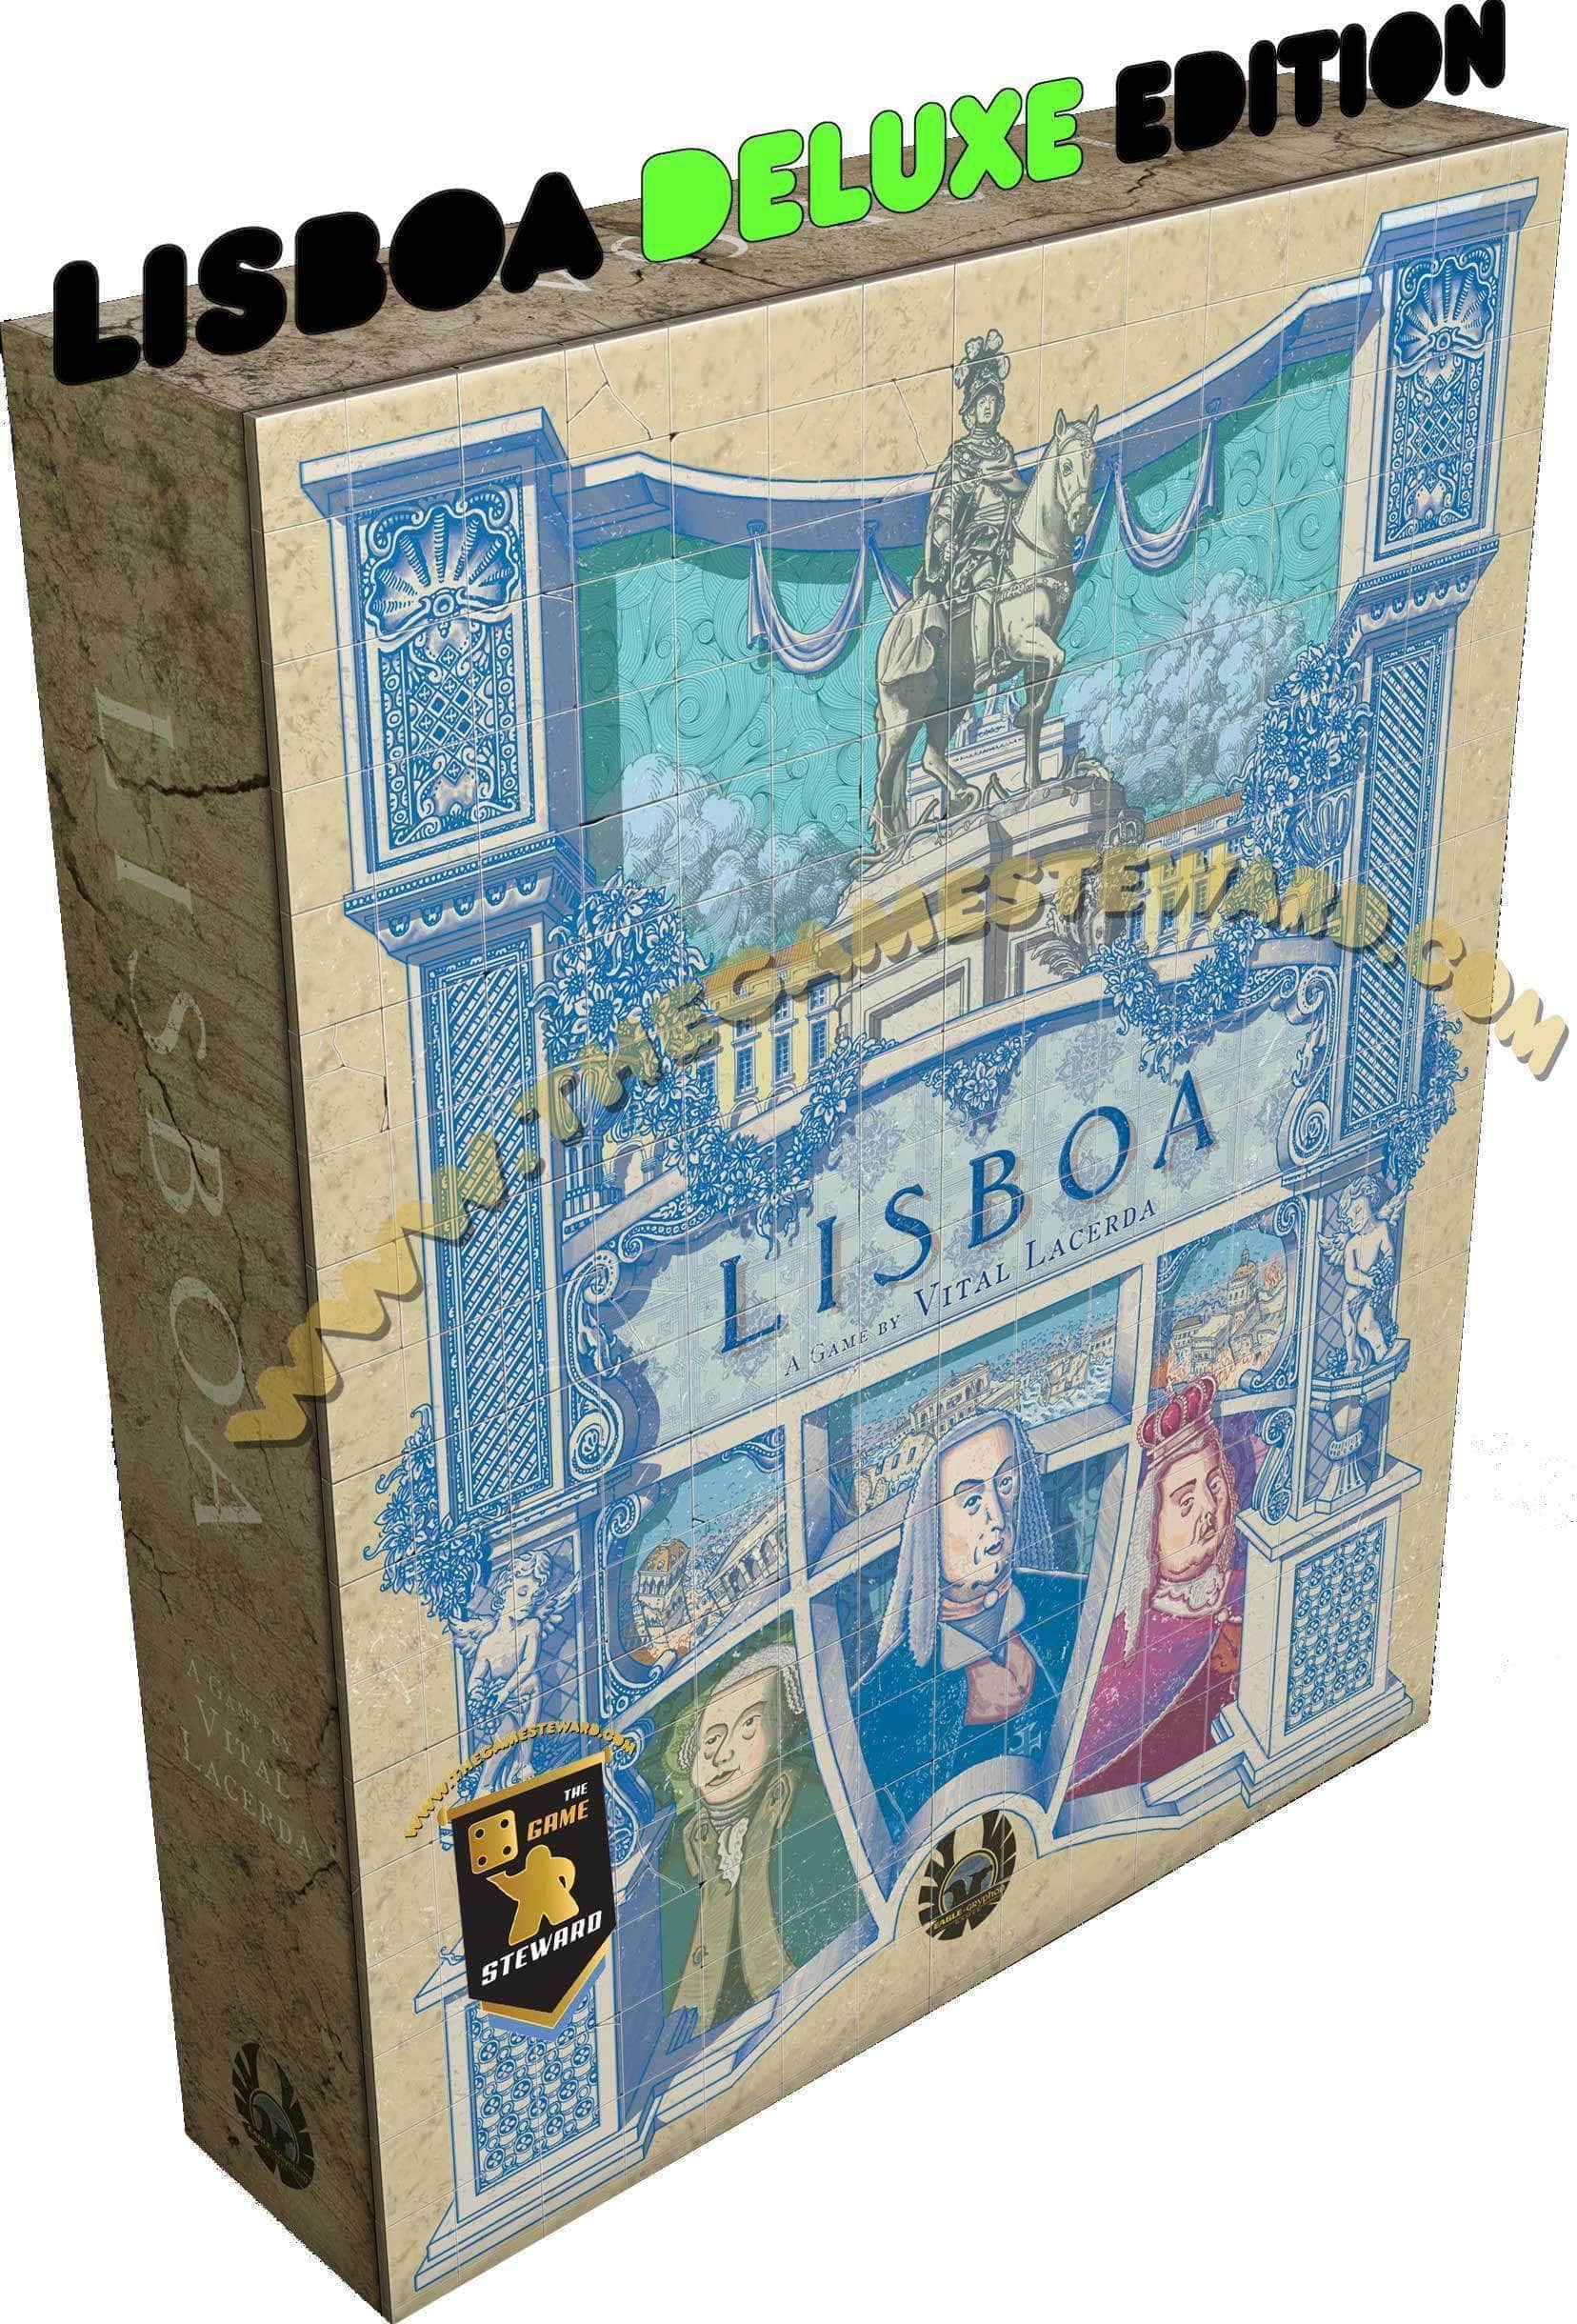 Lisboa: Deluxe Edition Plus Variant Queen (Kickstarter Special) Game de conseil Kickstarter Eagle Gryphon Games 609456647670 KS000633